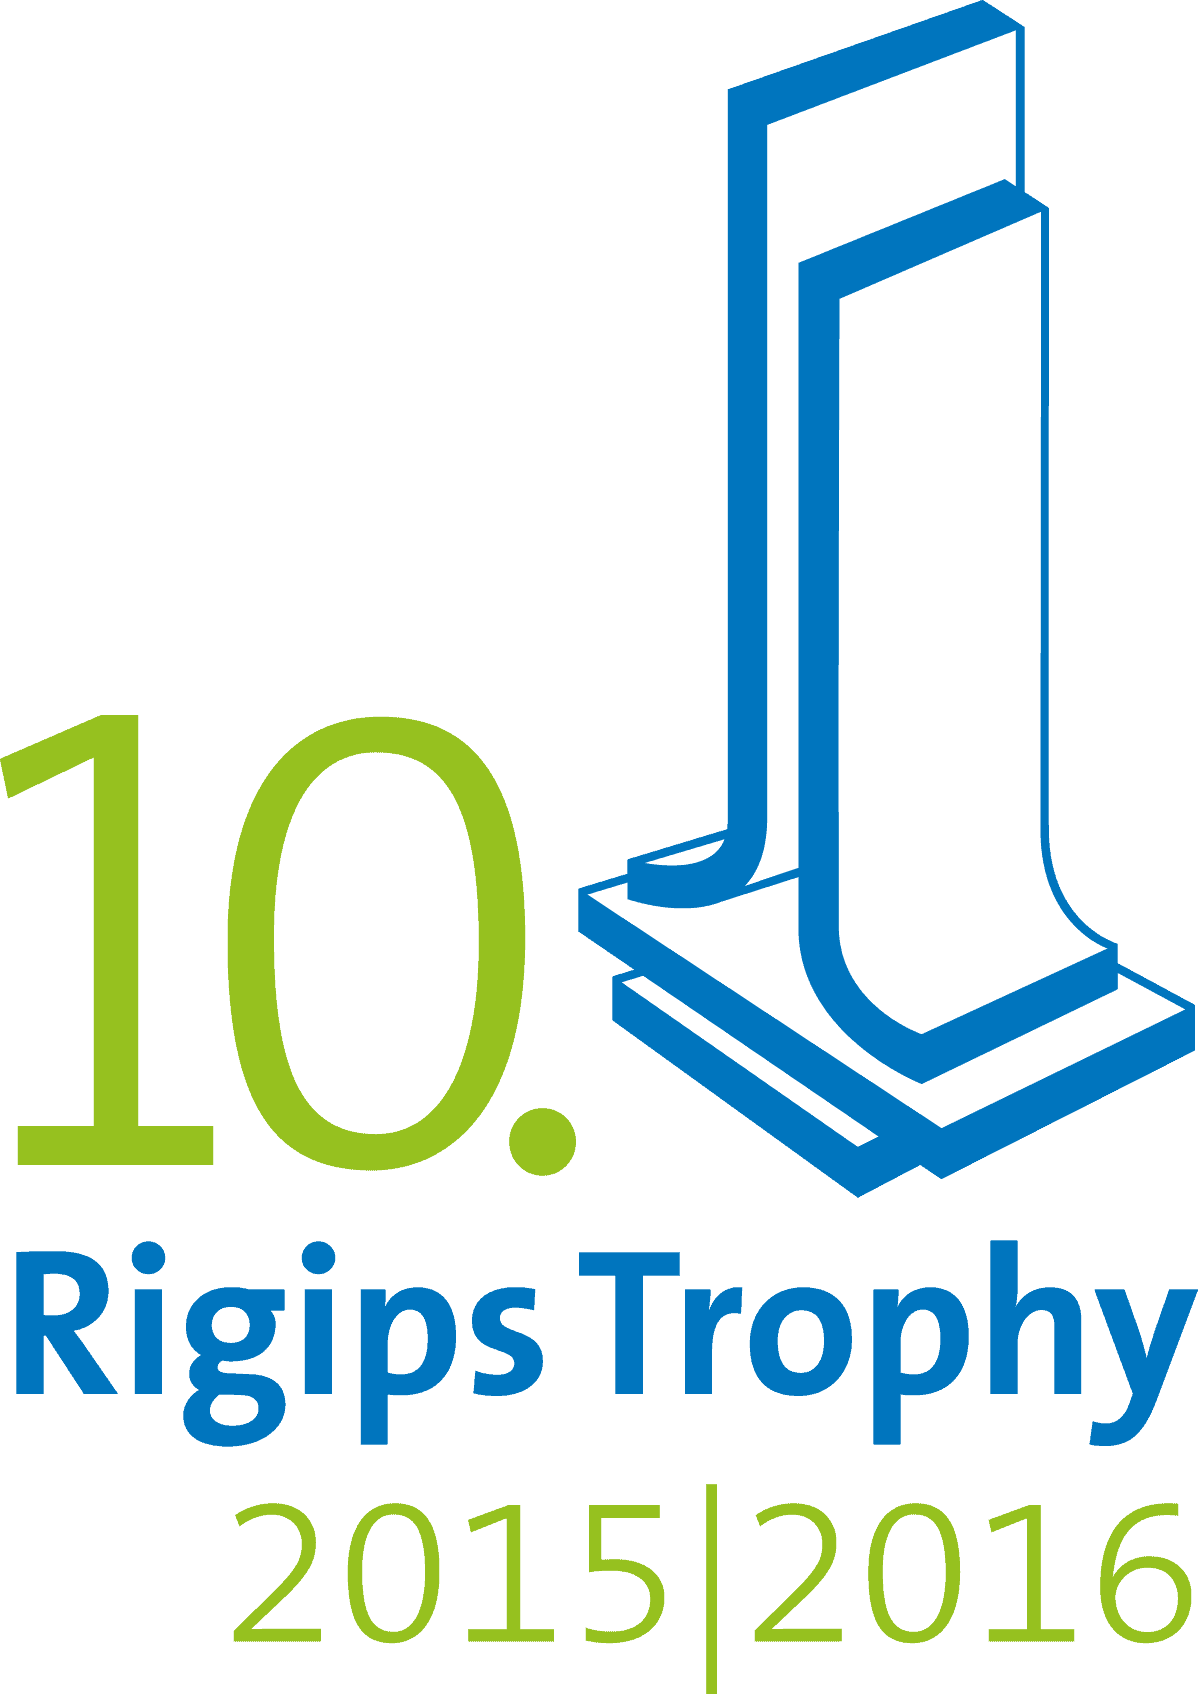 Teilnahme an der 10. Rigips Trophy 2015 / 2016